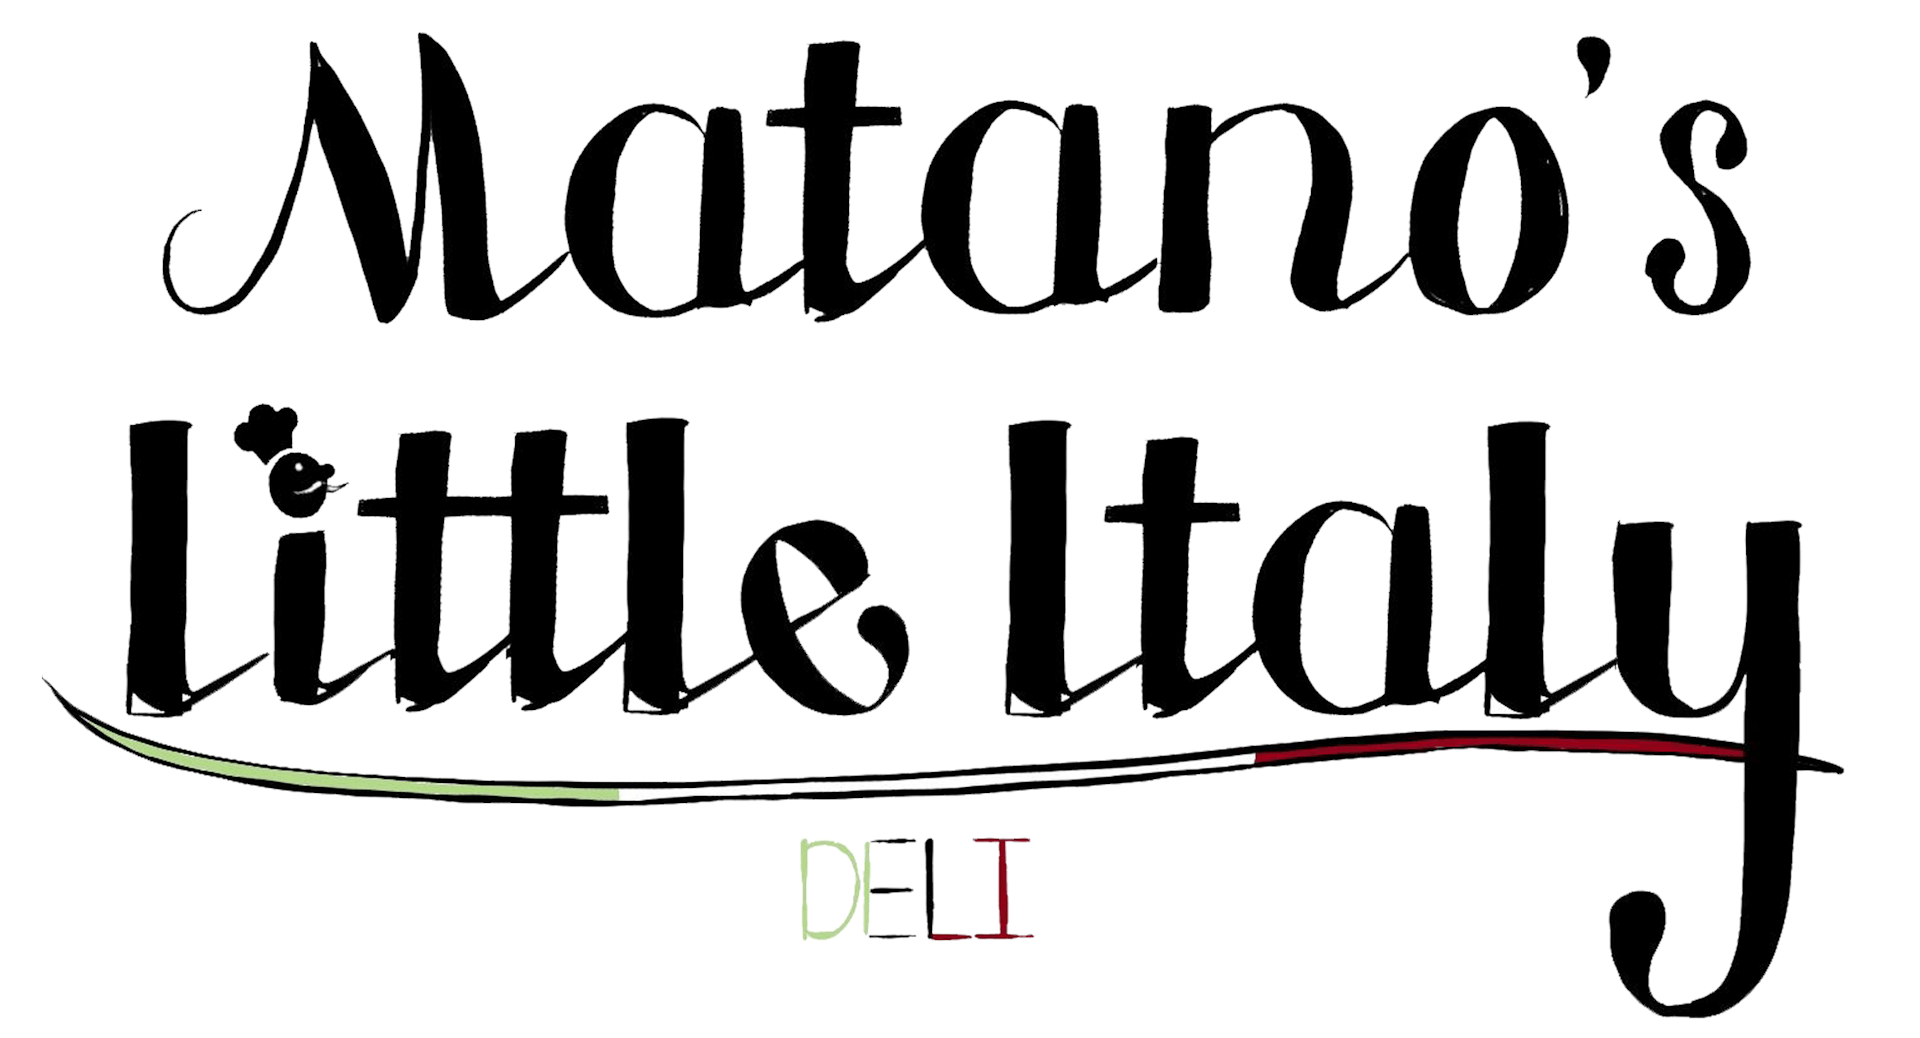 Matano's Little Italy